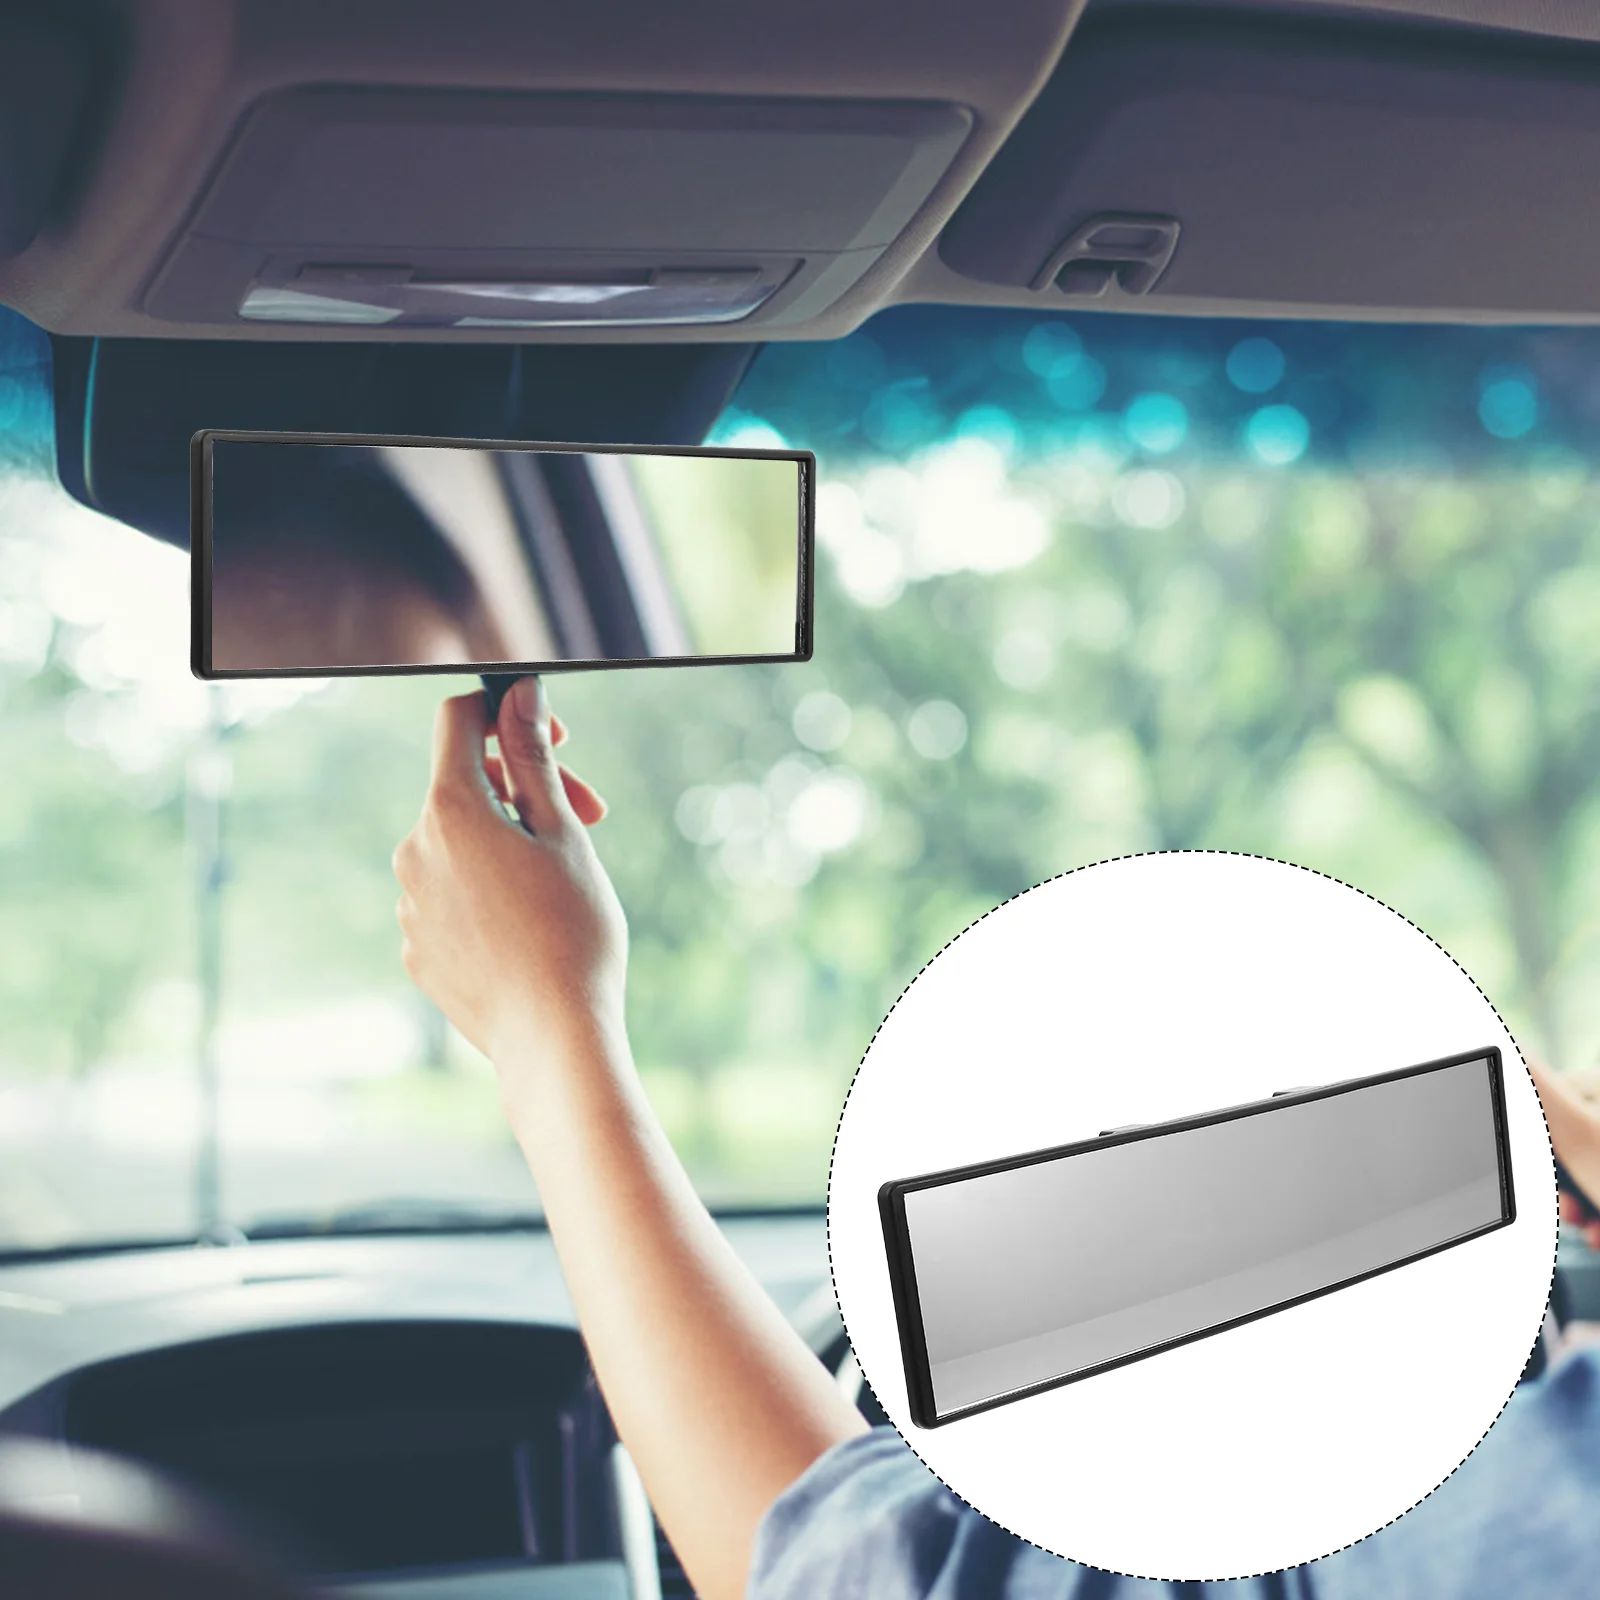 

Автомобильное зеркало заднего вида, универсальная утолщенная зеркальная поверхность, принадлежности для салона автомобиля, 1 шт.